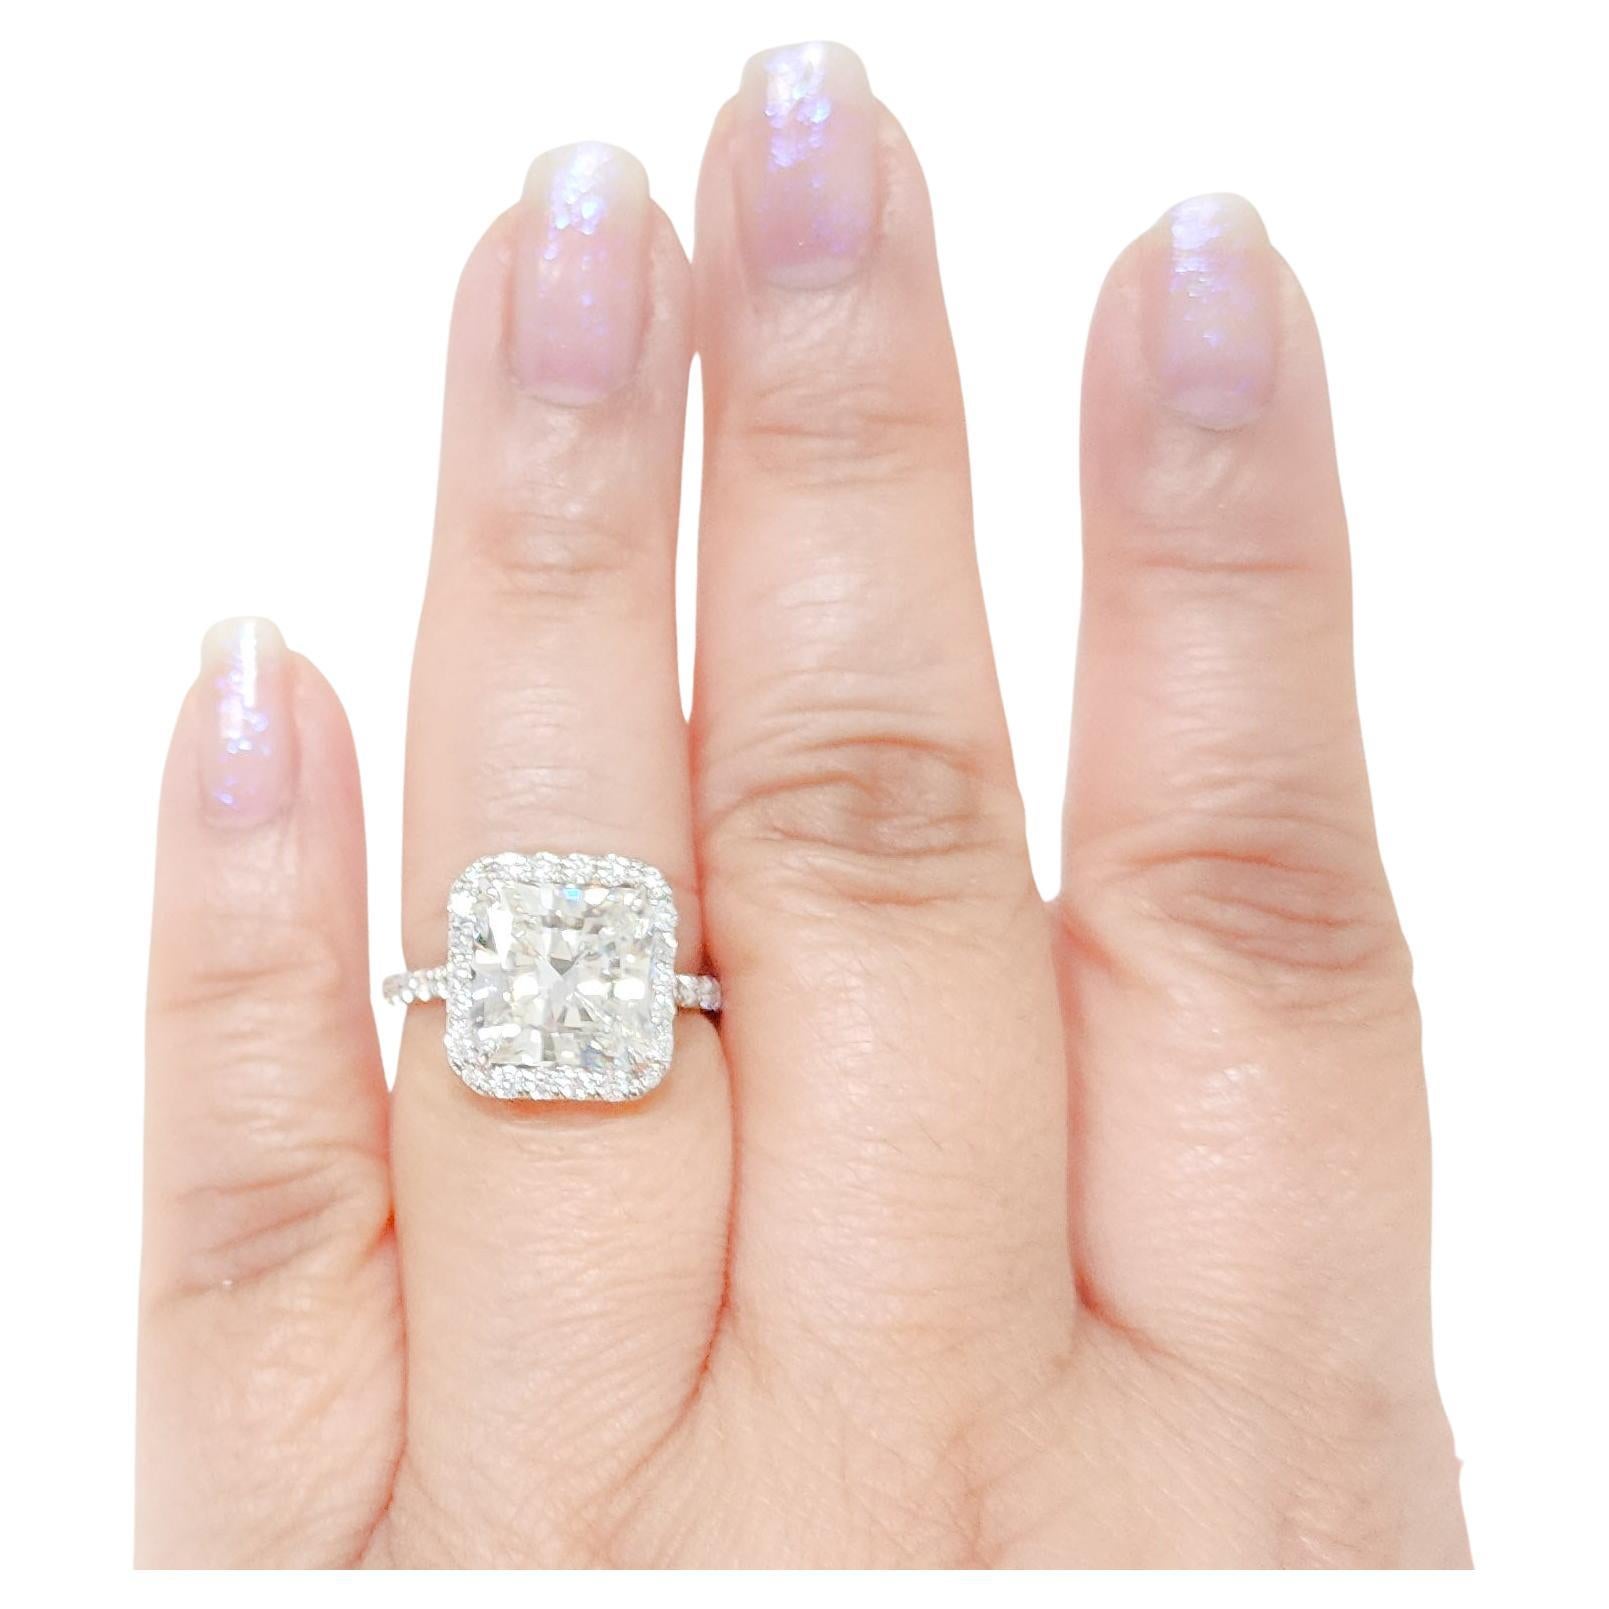 GIA 5.27ct. White Diamond Radiant Ring in 18k White Gold